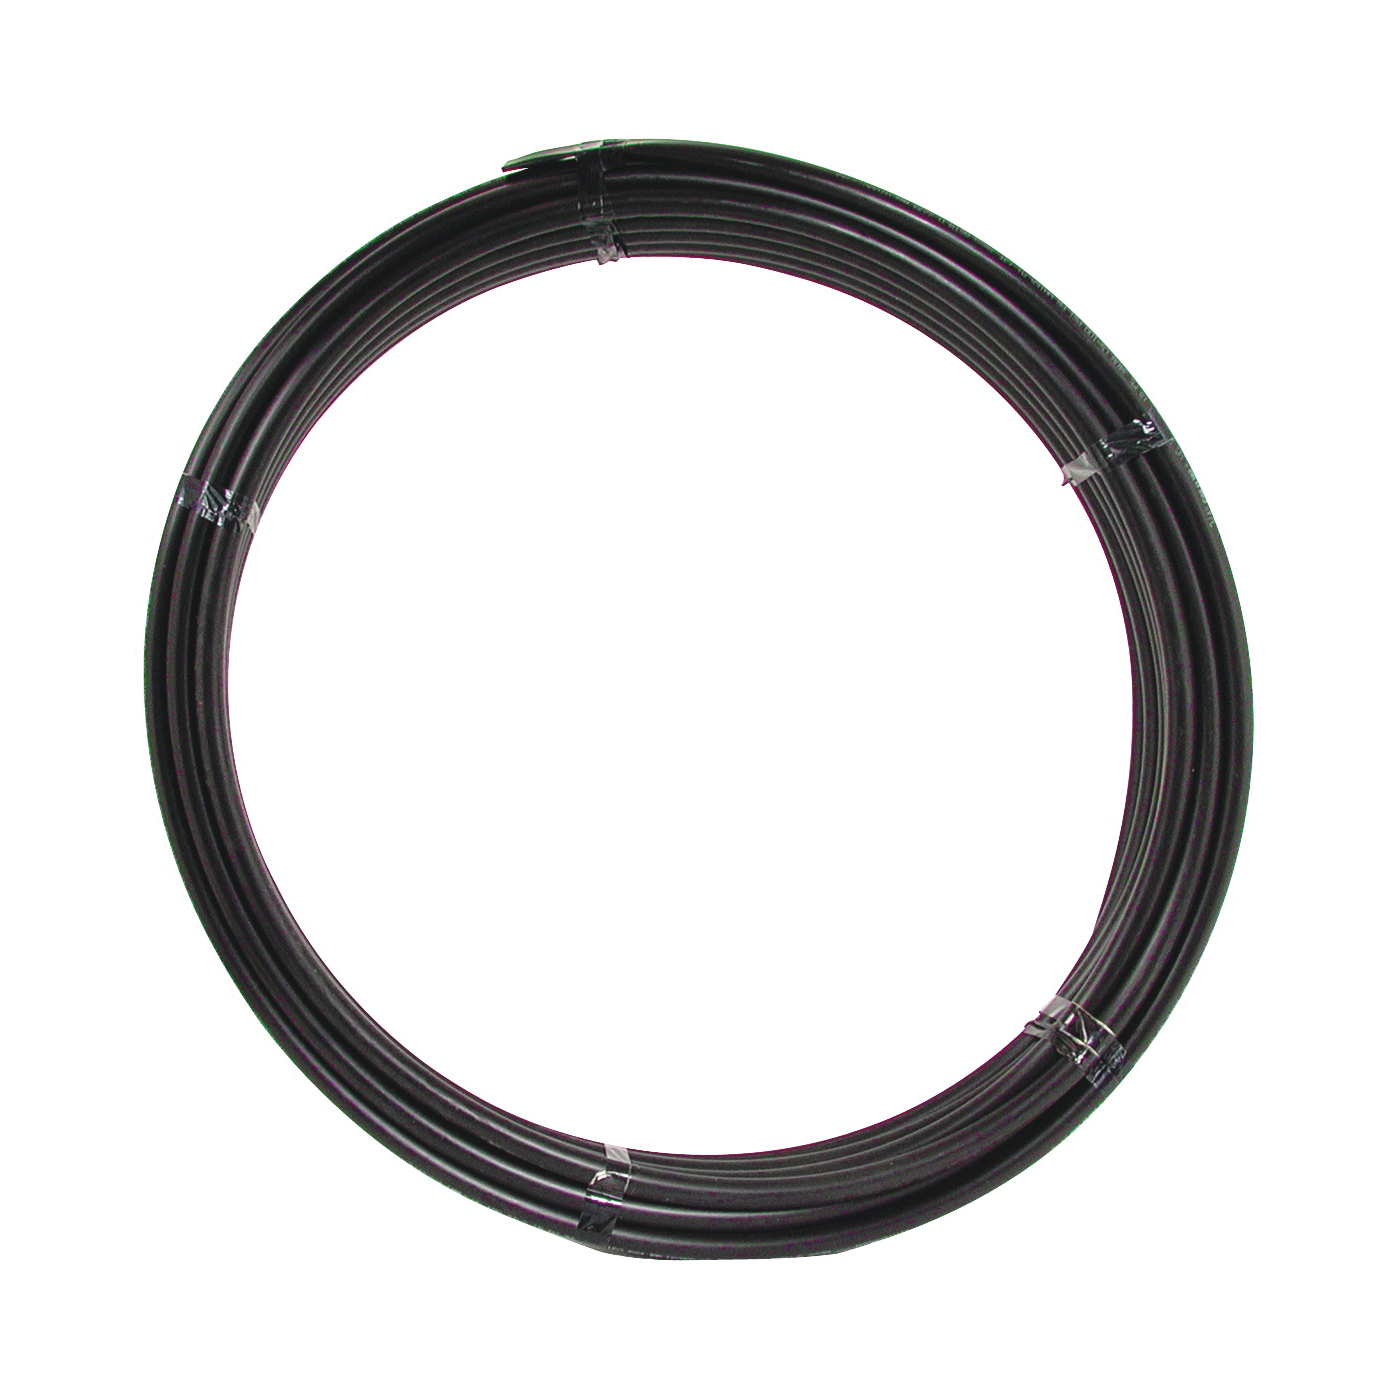 18105 Pipe Tubing, 3/4 in, Plastic, Black, 100 ft L